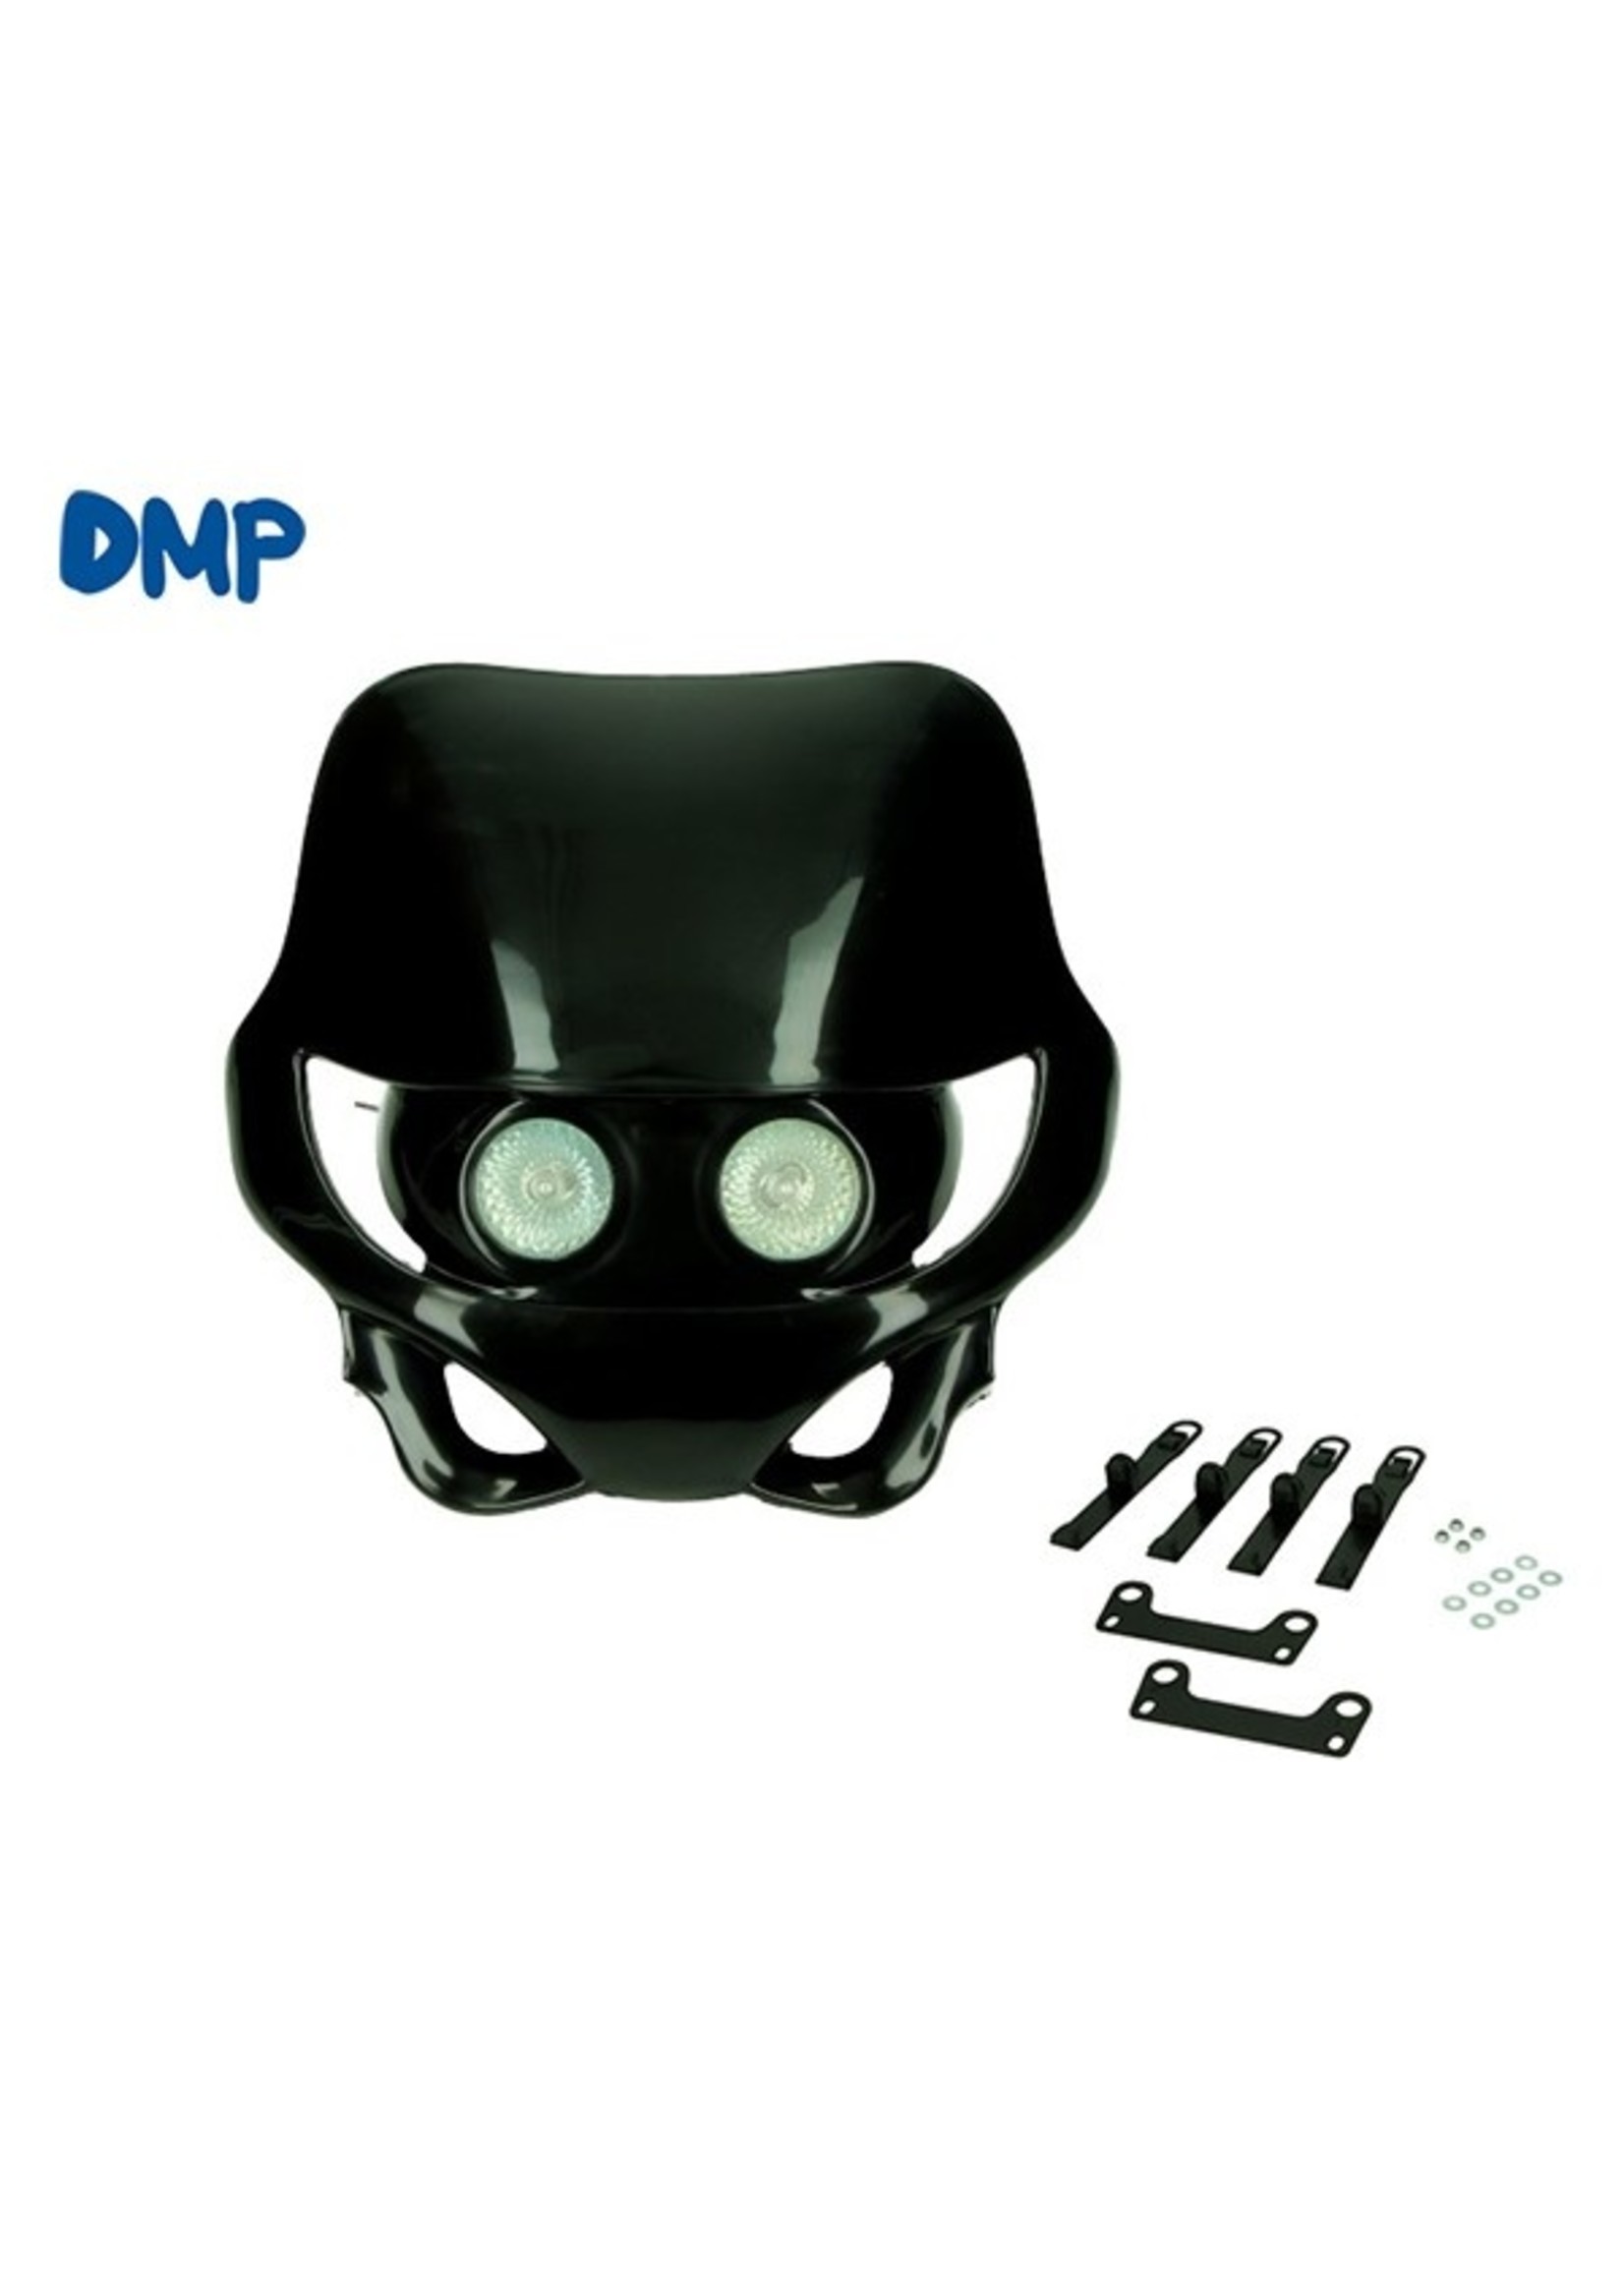 koplamp dubbel + koplampspoiler halogeen otr/sm zwart DMP